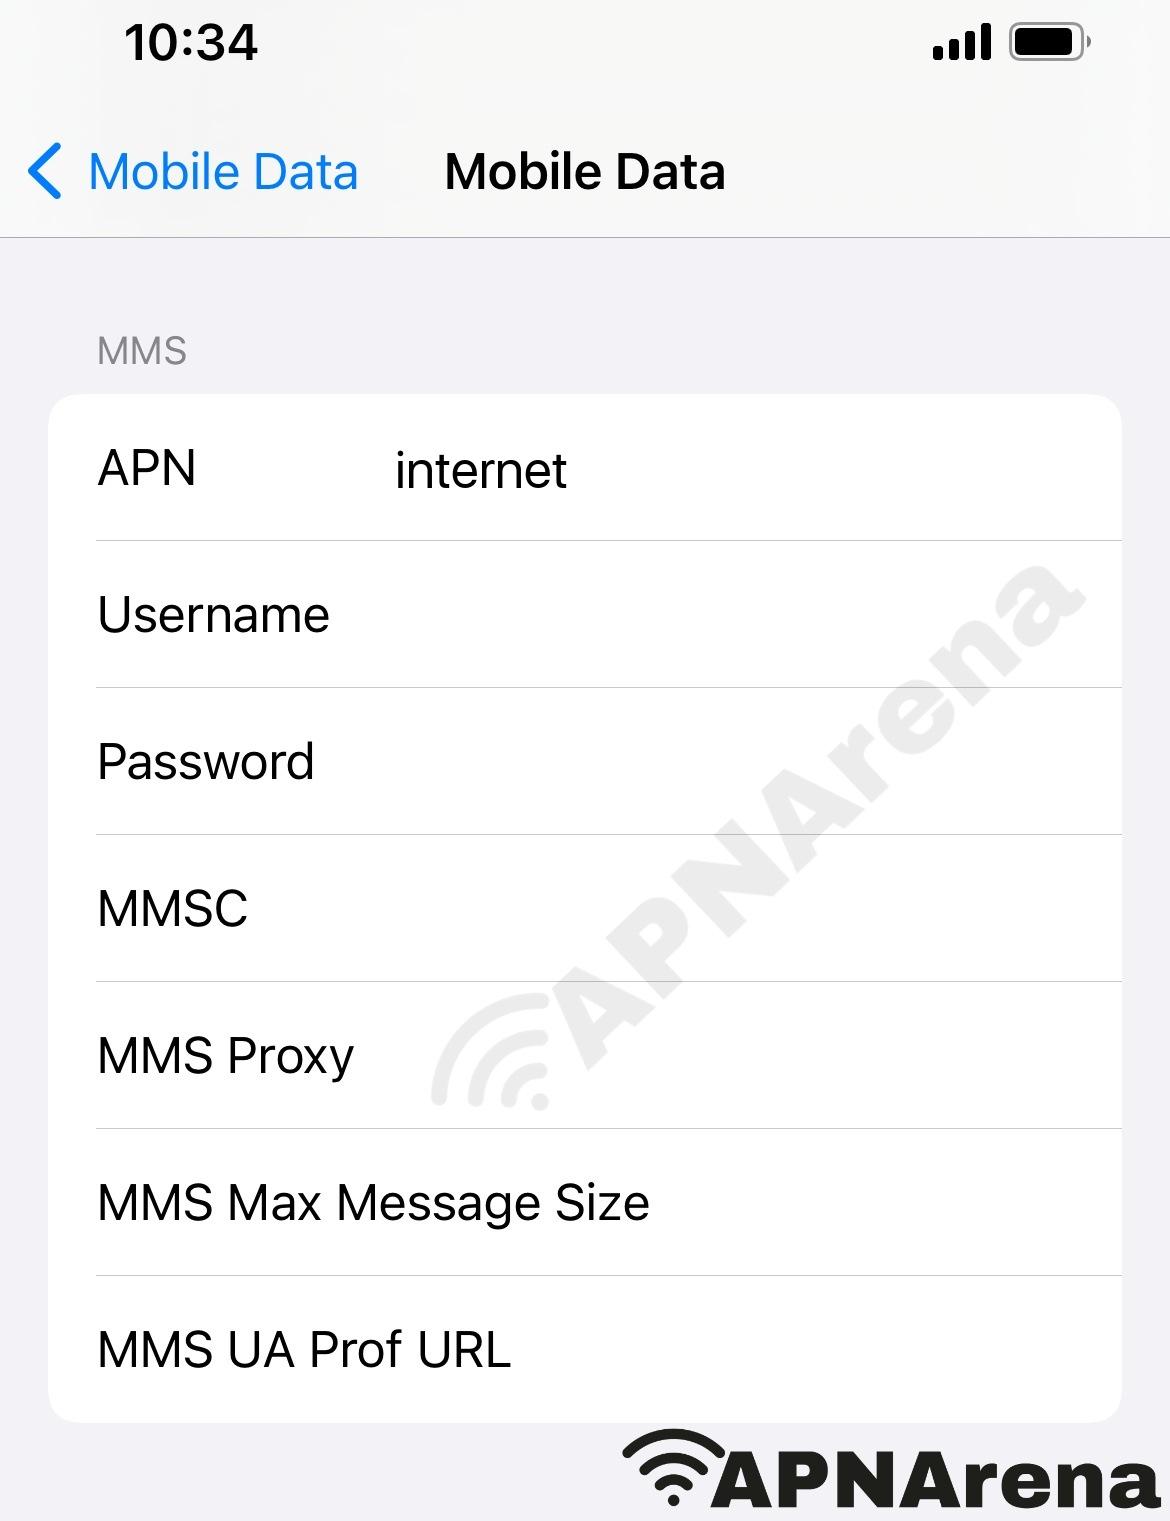 Priyo Mobile MMS Settings for iPhone